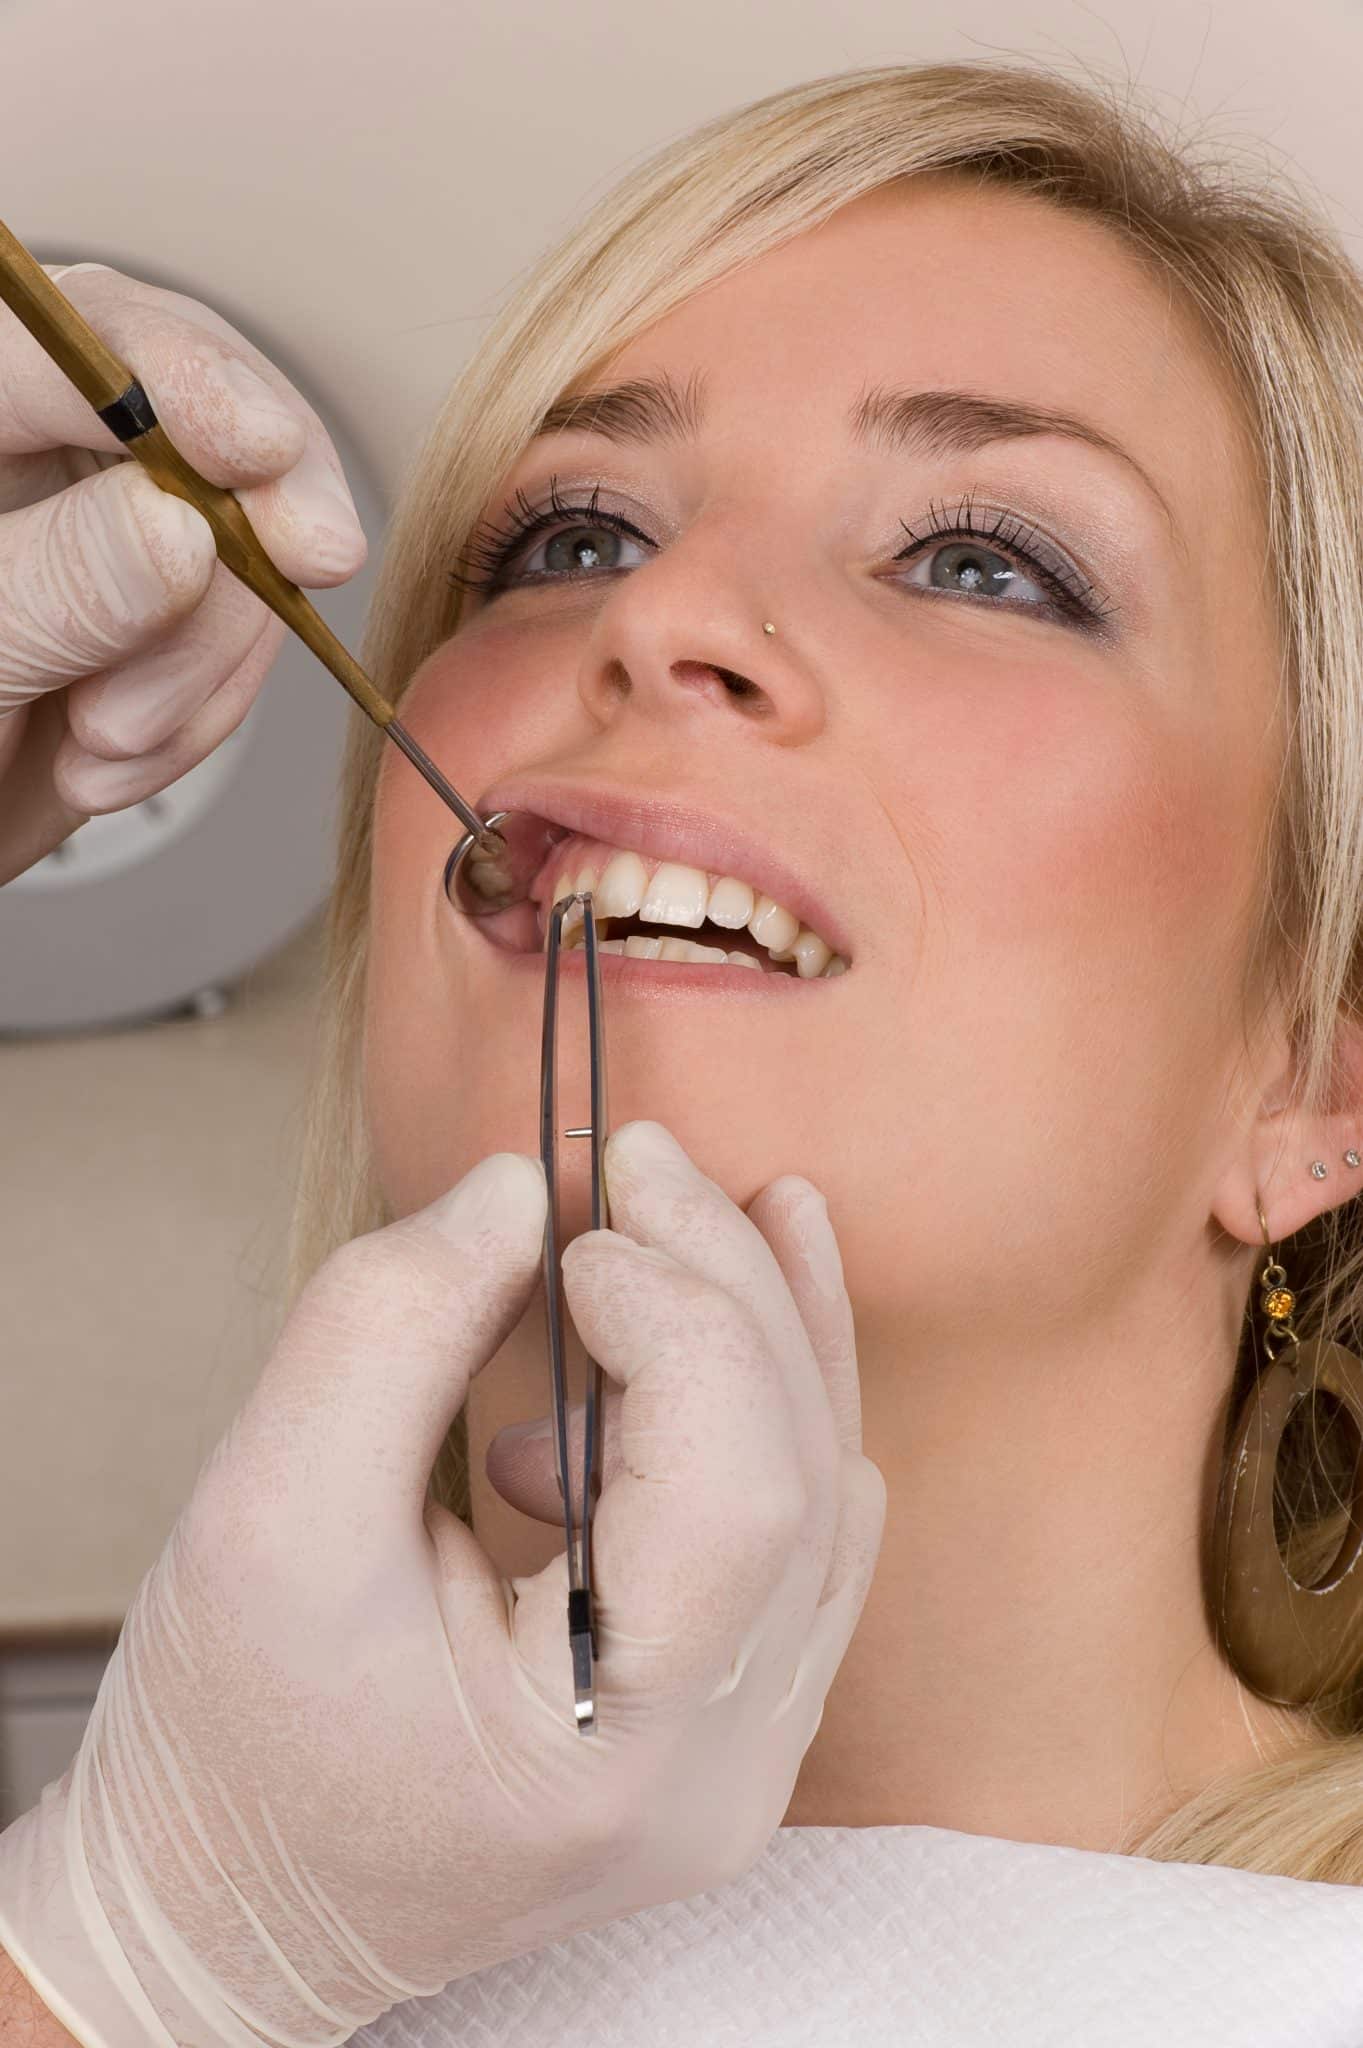 Ein Zahnarzt entfernt bei einer jungen, blonden Frau den Zahnschmuck von einem Zahn.